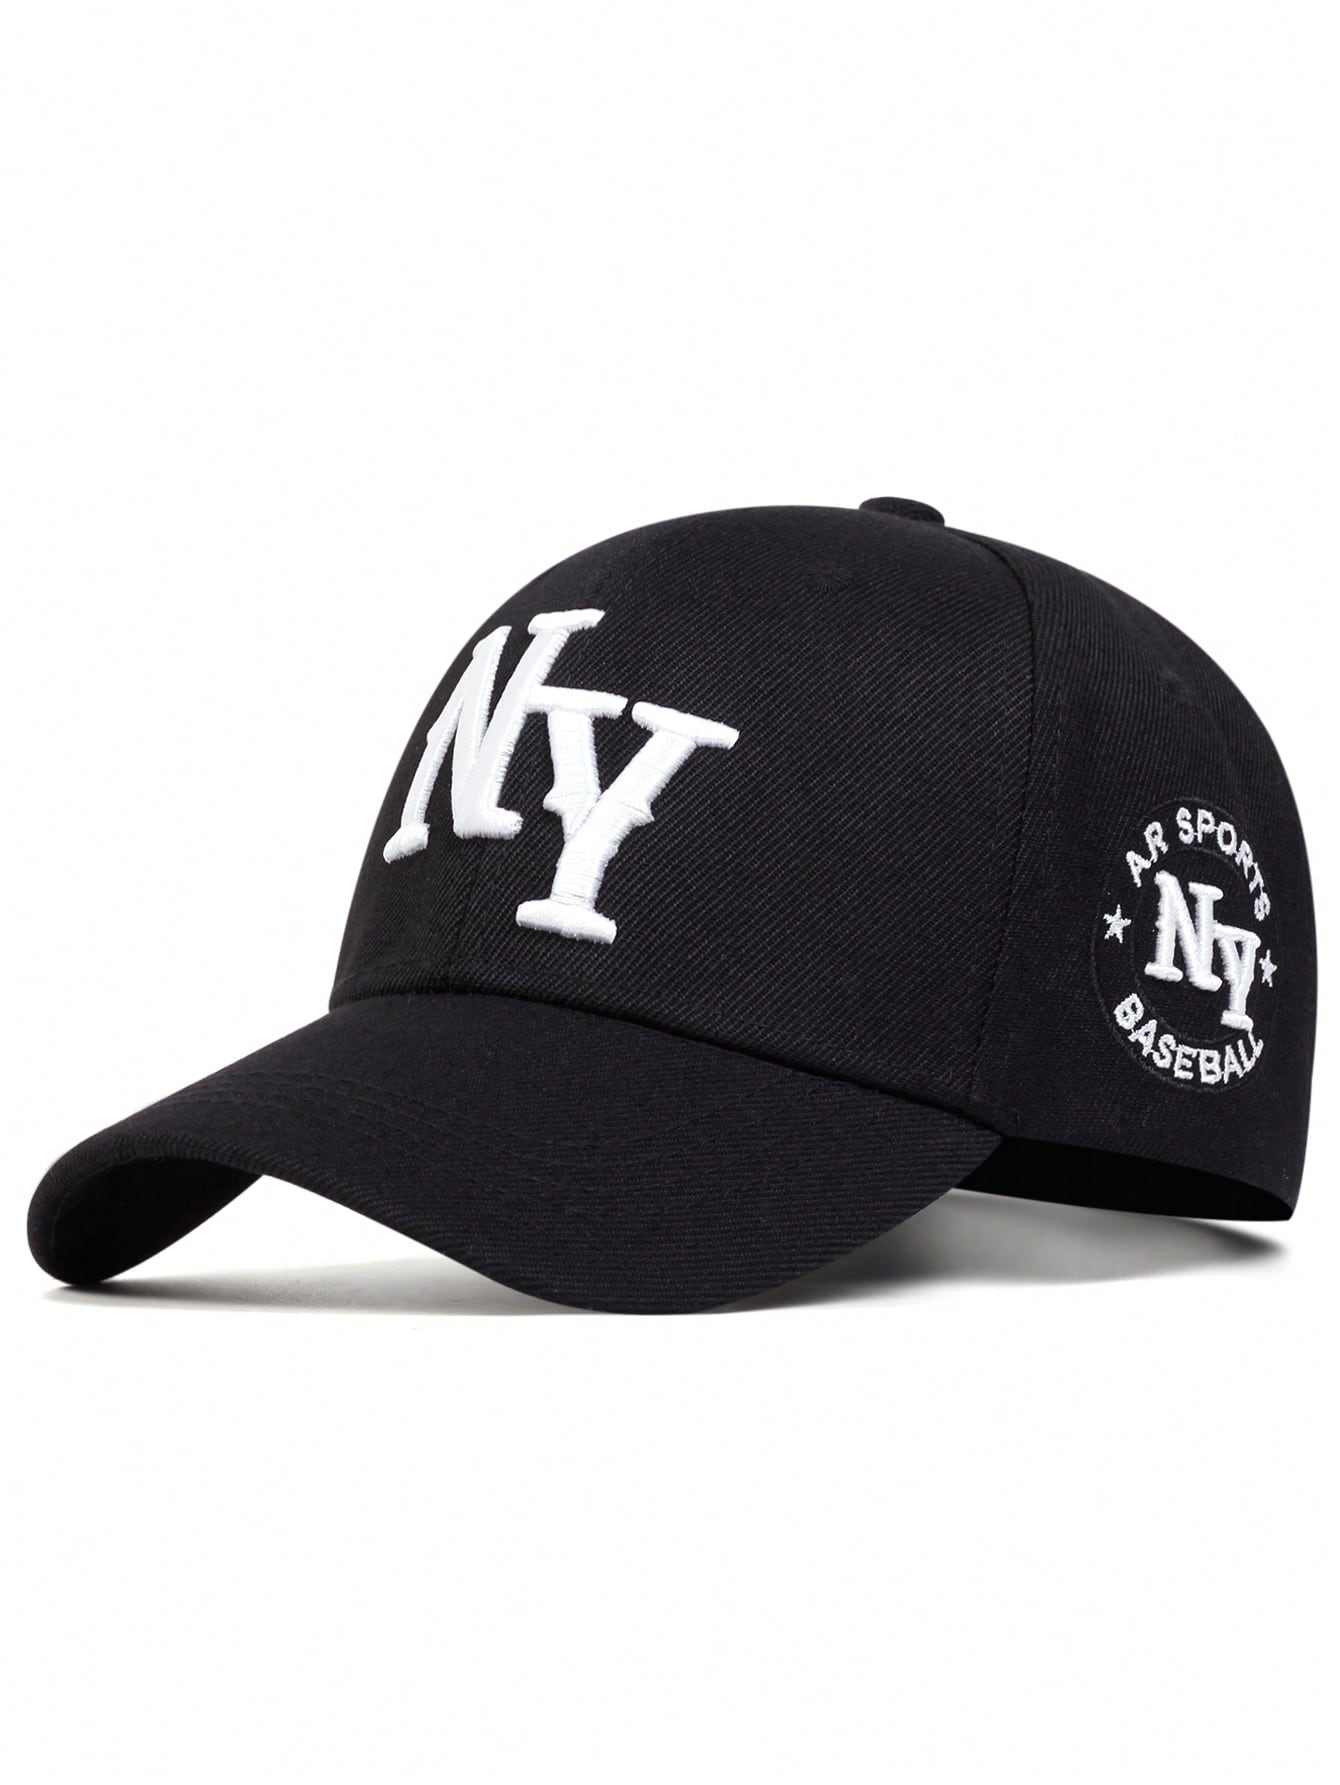 1 шт. мужская бейсболка с вышивкой букв «Нью-Йорк», черный